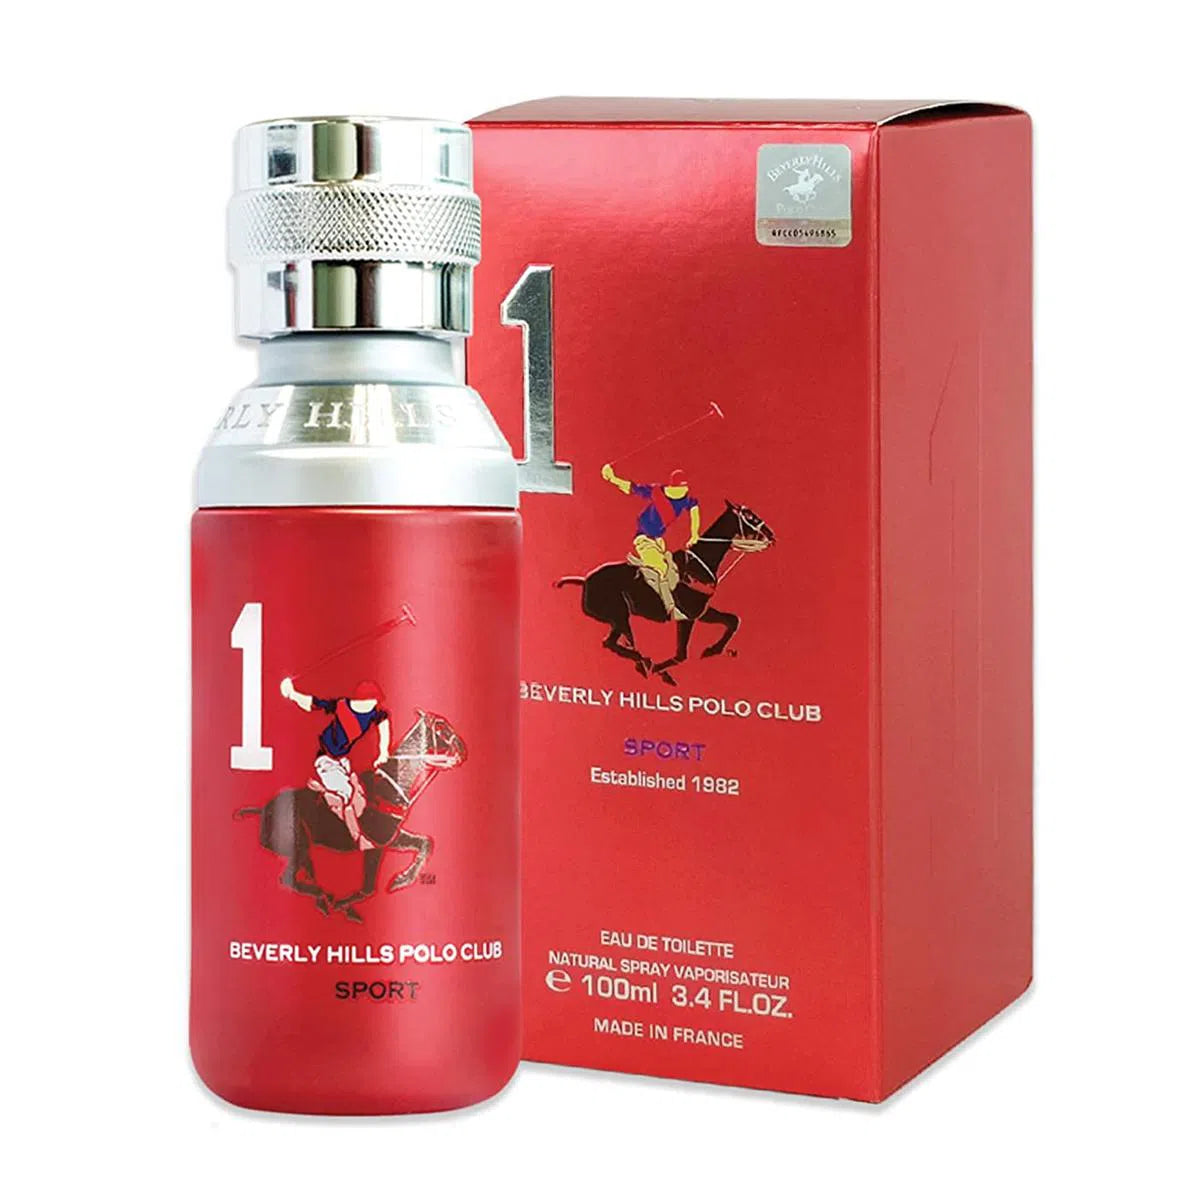 Perfume Beverly Hills Polo Club Sport 1 EDT (M) / 100 ml - 8718719850046- Prive Perfumes Honduras